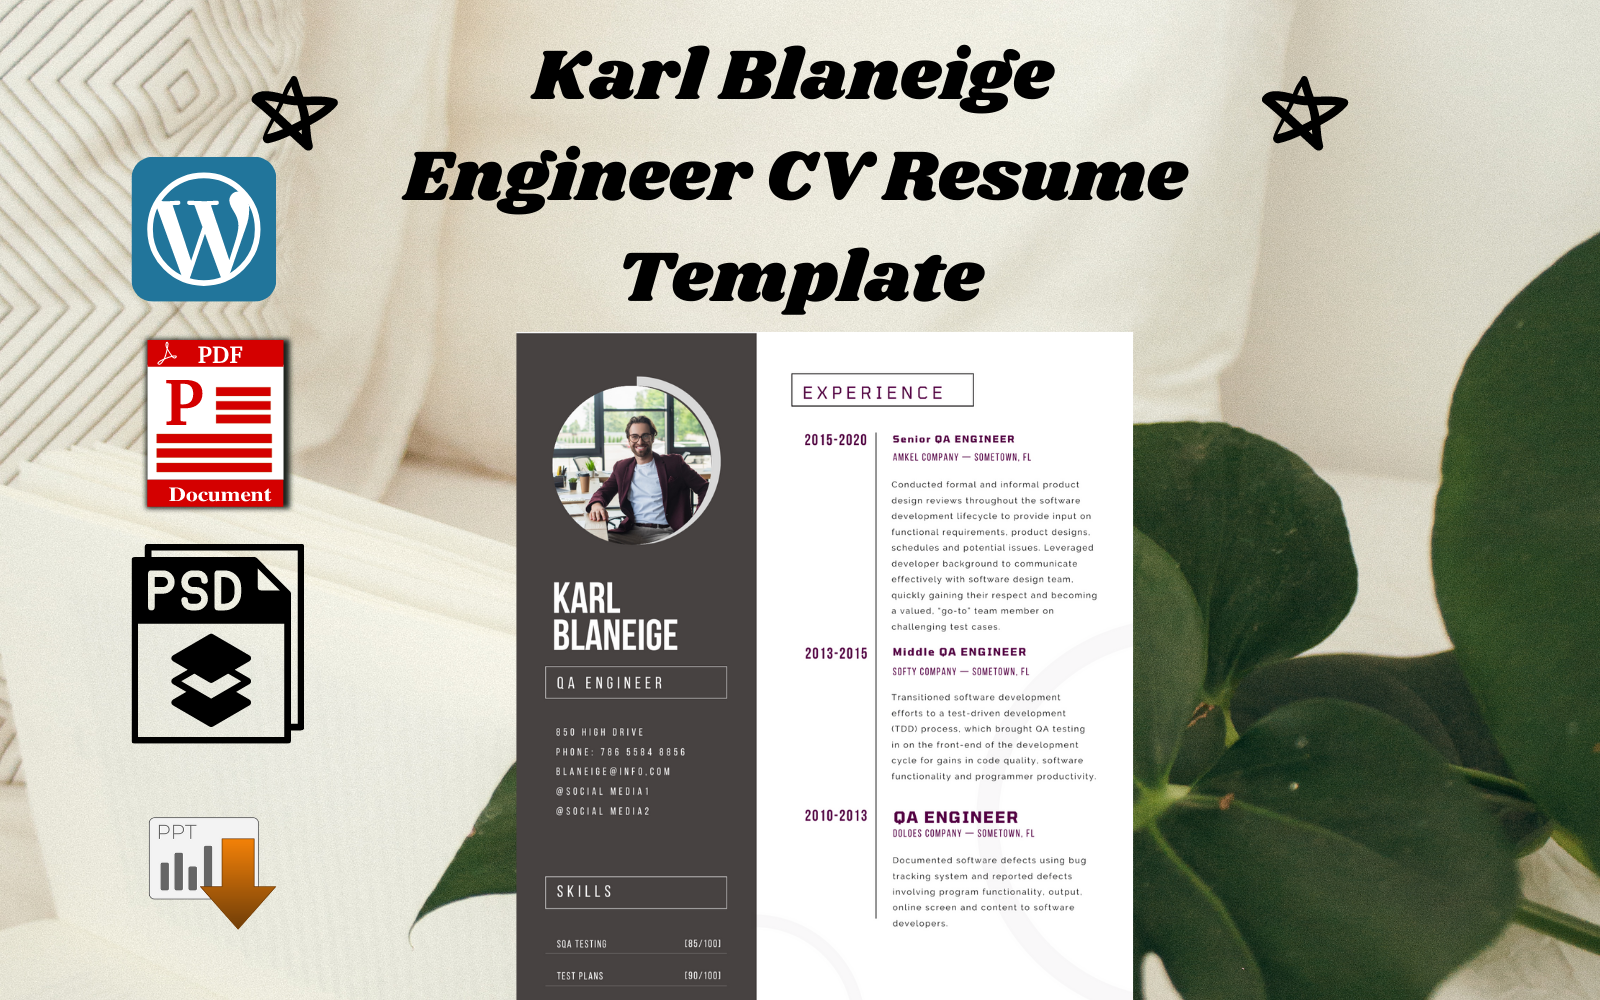 Karl Blaneige  Engineer CV Resume  Template